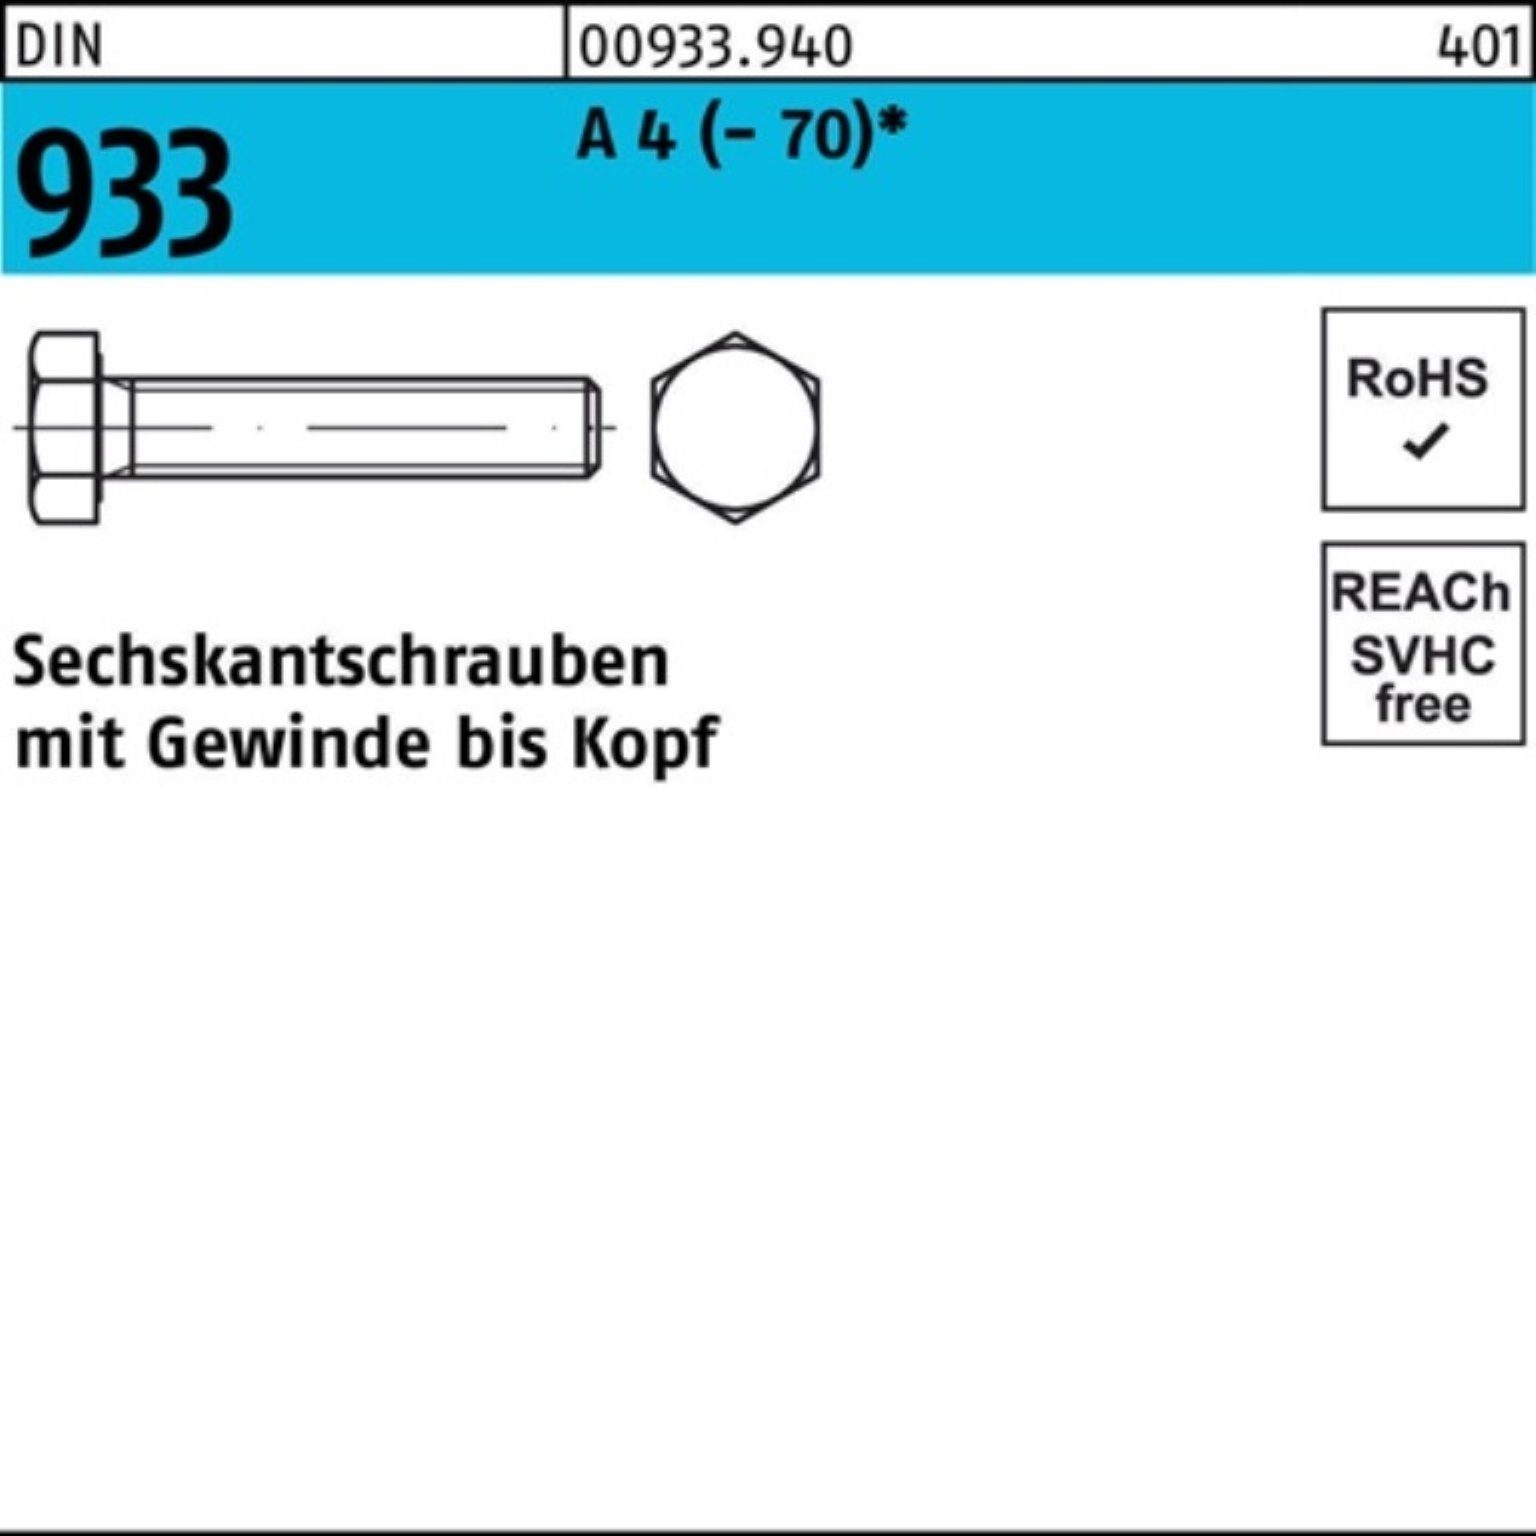 Reyher Sechskantschraube D VG Pack 190 1 (70) DIN 4 100er A 933 M20x Stück Sechskantschraube